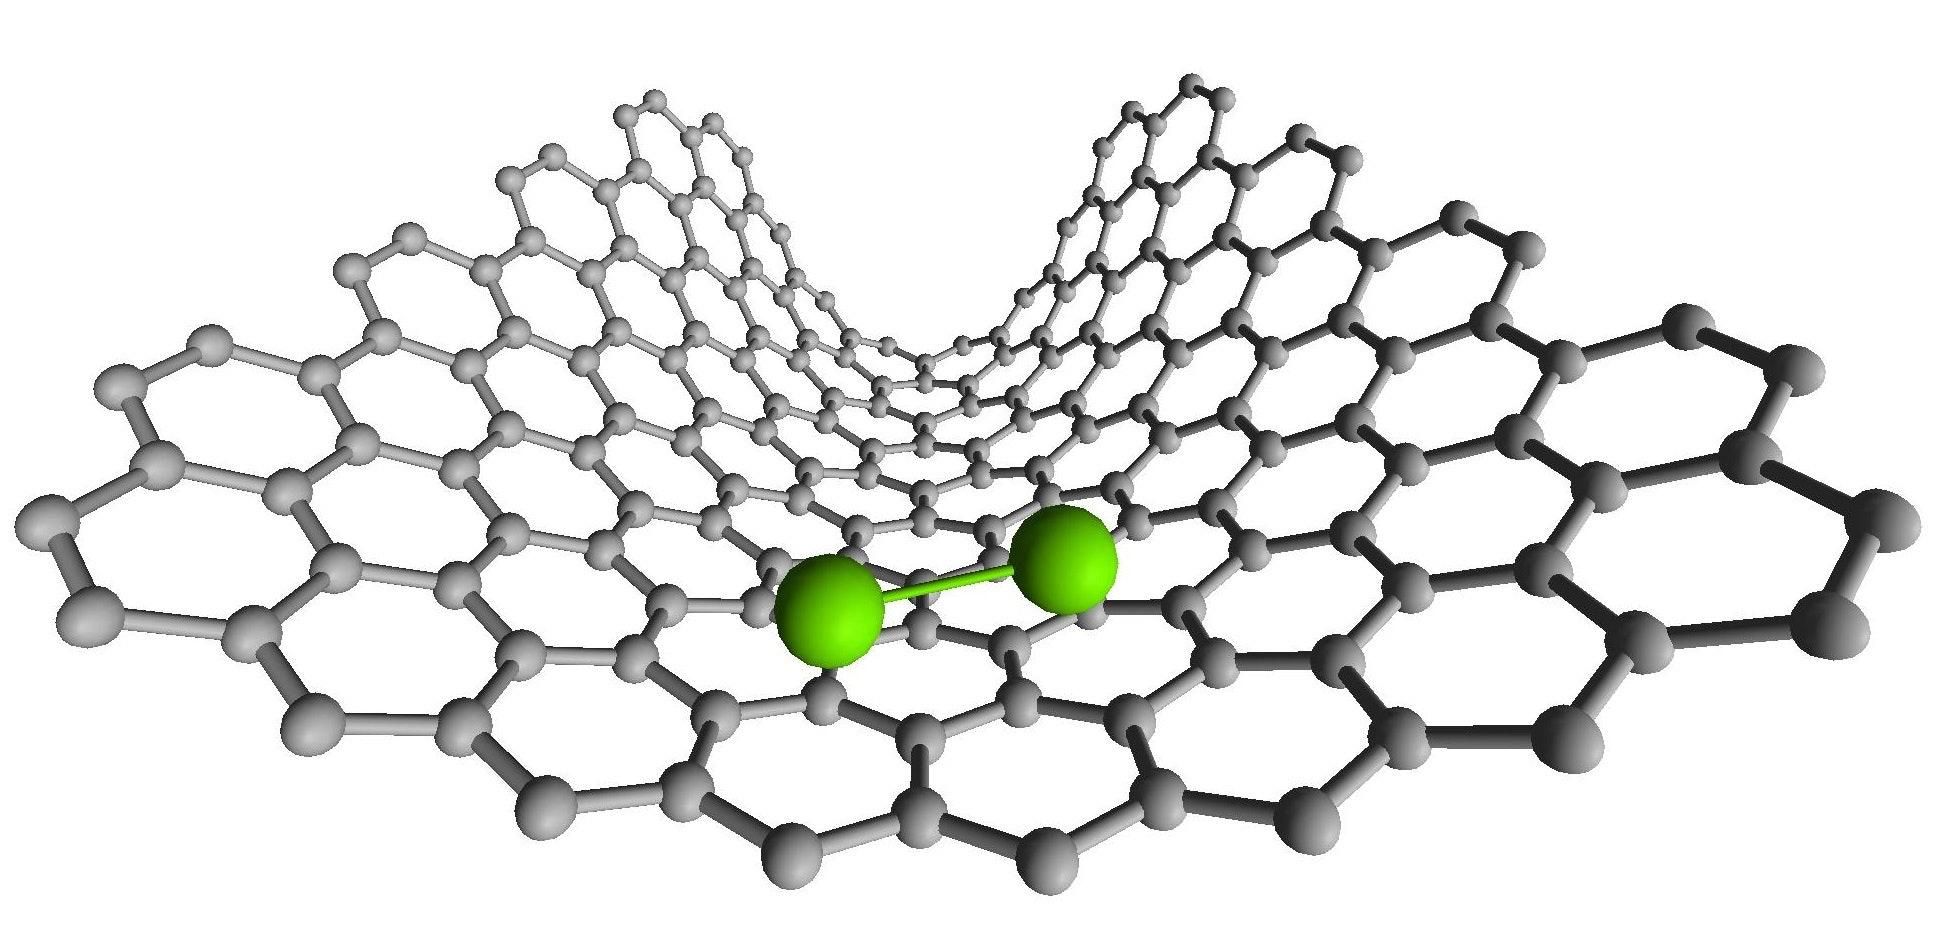 Les nanotubes de carbone permettent aux scientifiques d'attraper les atomes ou les molécules et de les positionner exactement là où ils le désirent. [University of Nottingham]